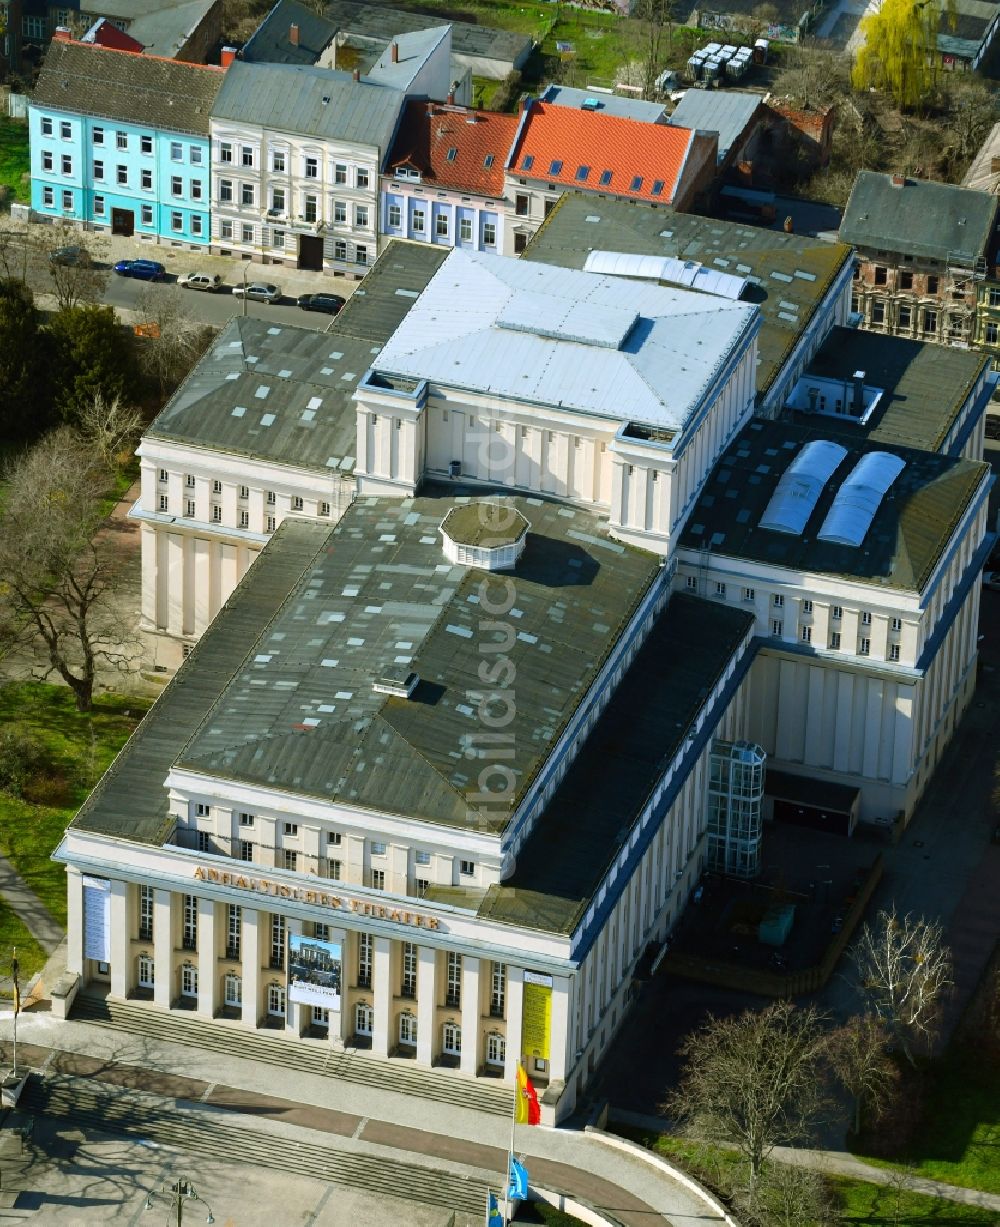 Luftbild Dessau - Anhaltisches Theater in Dessau im Bundesland Sachsen-Anhalt, Deutschland